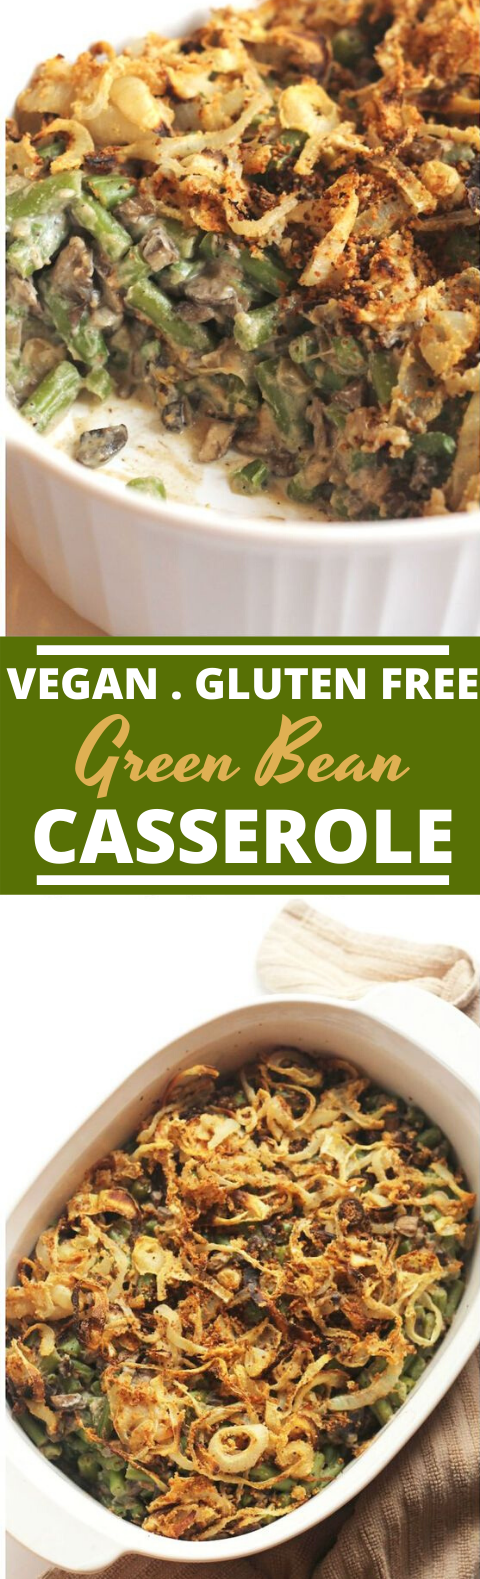 Vegan Green Bean Casserole #vegan #dinner #casserole #veggies #healthy